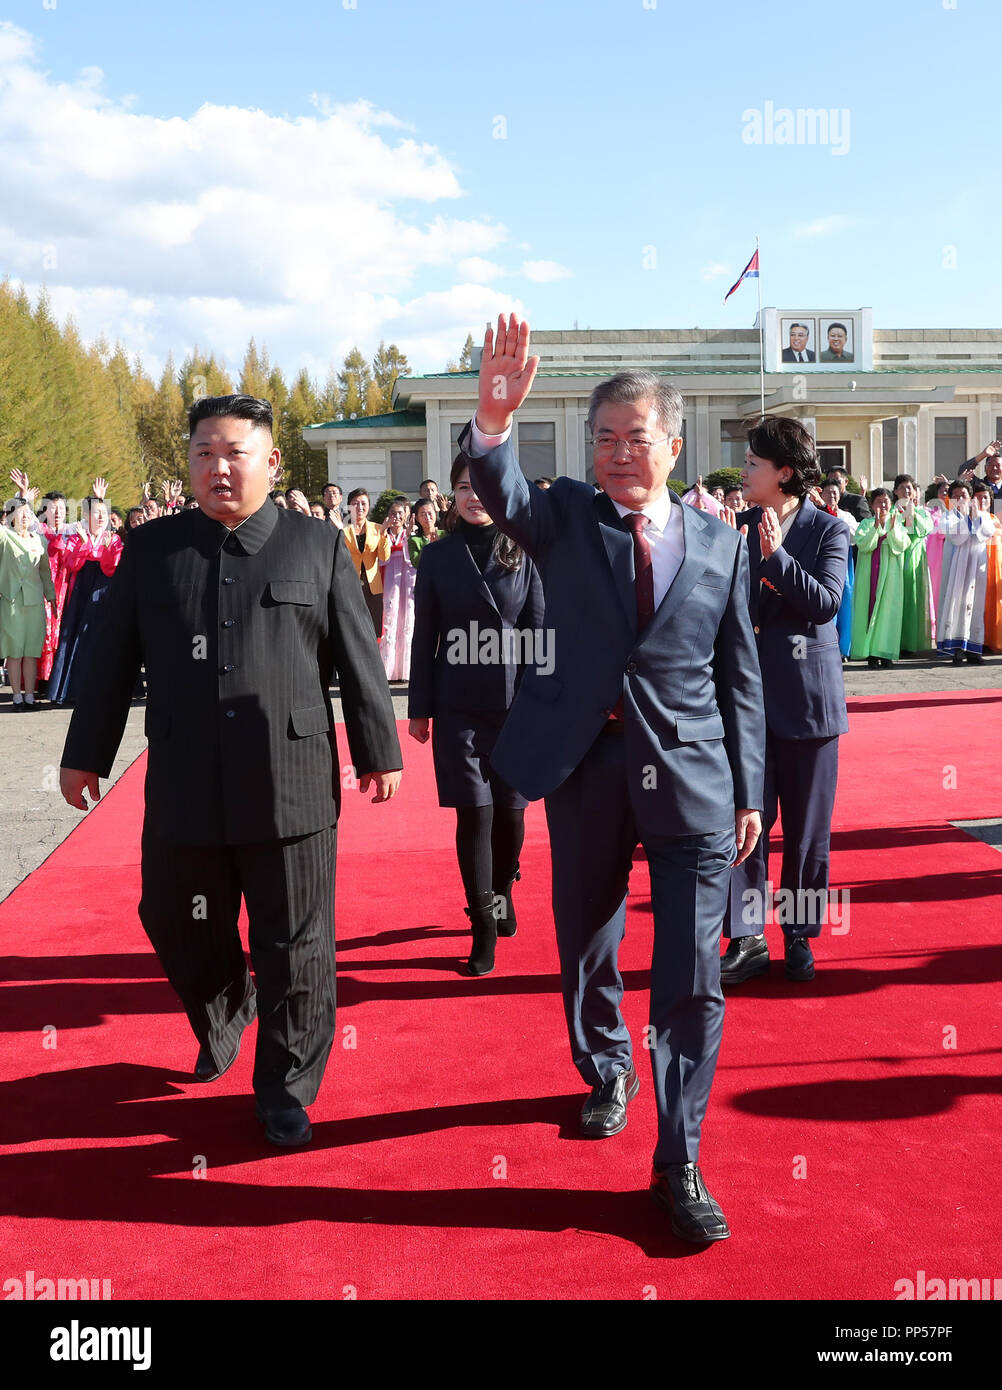 Sommet intercoréen, Sep 20, 2018 : le dirigeant nord-coréen Kim Jong-Un et le président sud-coréen Moon Jae-In (R) marcher ensemble à une cérémonie d'adieu pour la lune à la Samjiyon airport de Samjiyon près du Mont Paekdu, au nord-est de Pyongyang, en Corée du Nord avant le départ de ce dernier à Séoul. Le président sud-coréen Moon a visité la Corée du Nord de Sep 18-20, 2018 pour son troisième sommet avec le dirigeant nord-coréen Kim. Photo prise le 20 Sep 2018. Usage ÉDITORIAL UNIQUEMENT (crédit obligatoire : Pyeongyang Corps Presse/Piscine/AFLO) (CORÉE DU NORD) Banque D'Images